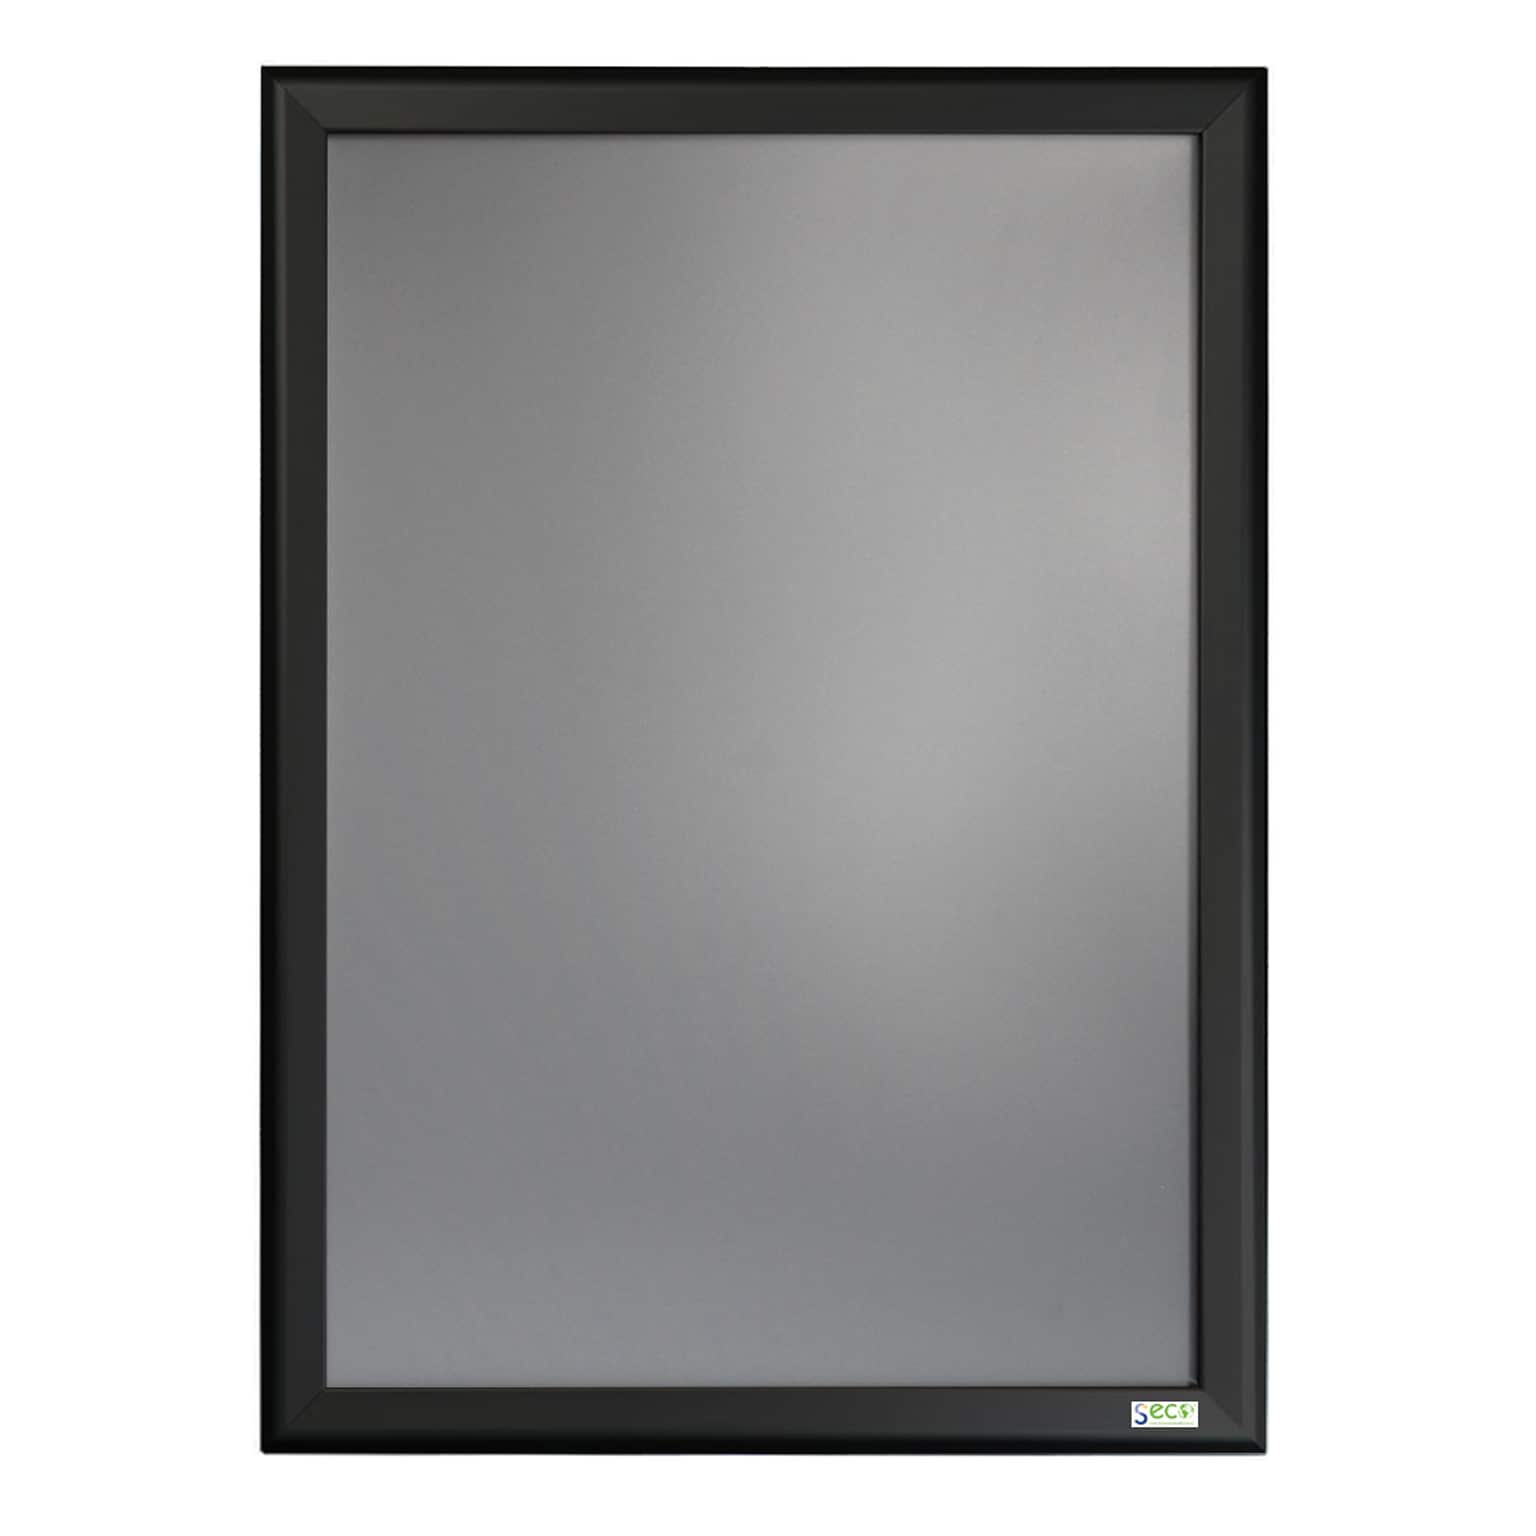 Seco Snapframe Poster Frame, 27 x 40, Black (SN2740BLACK)